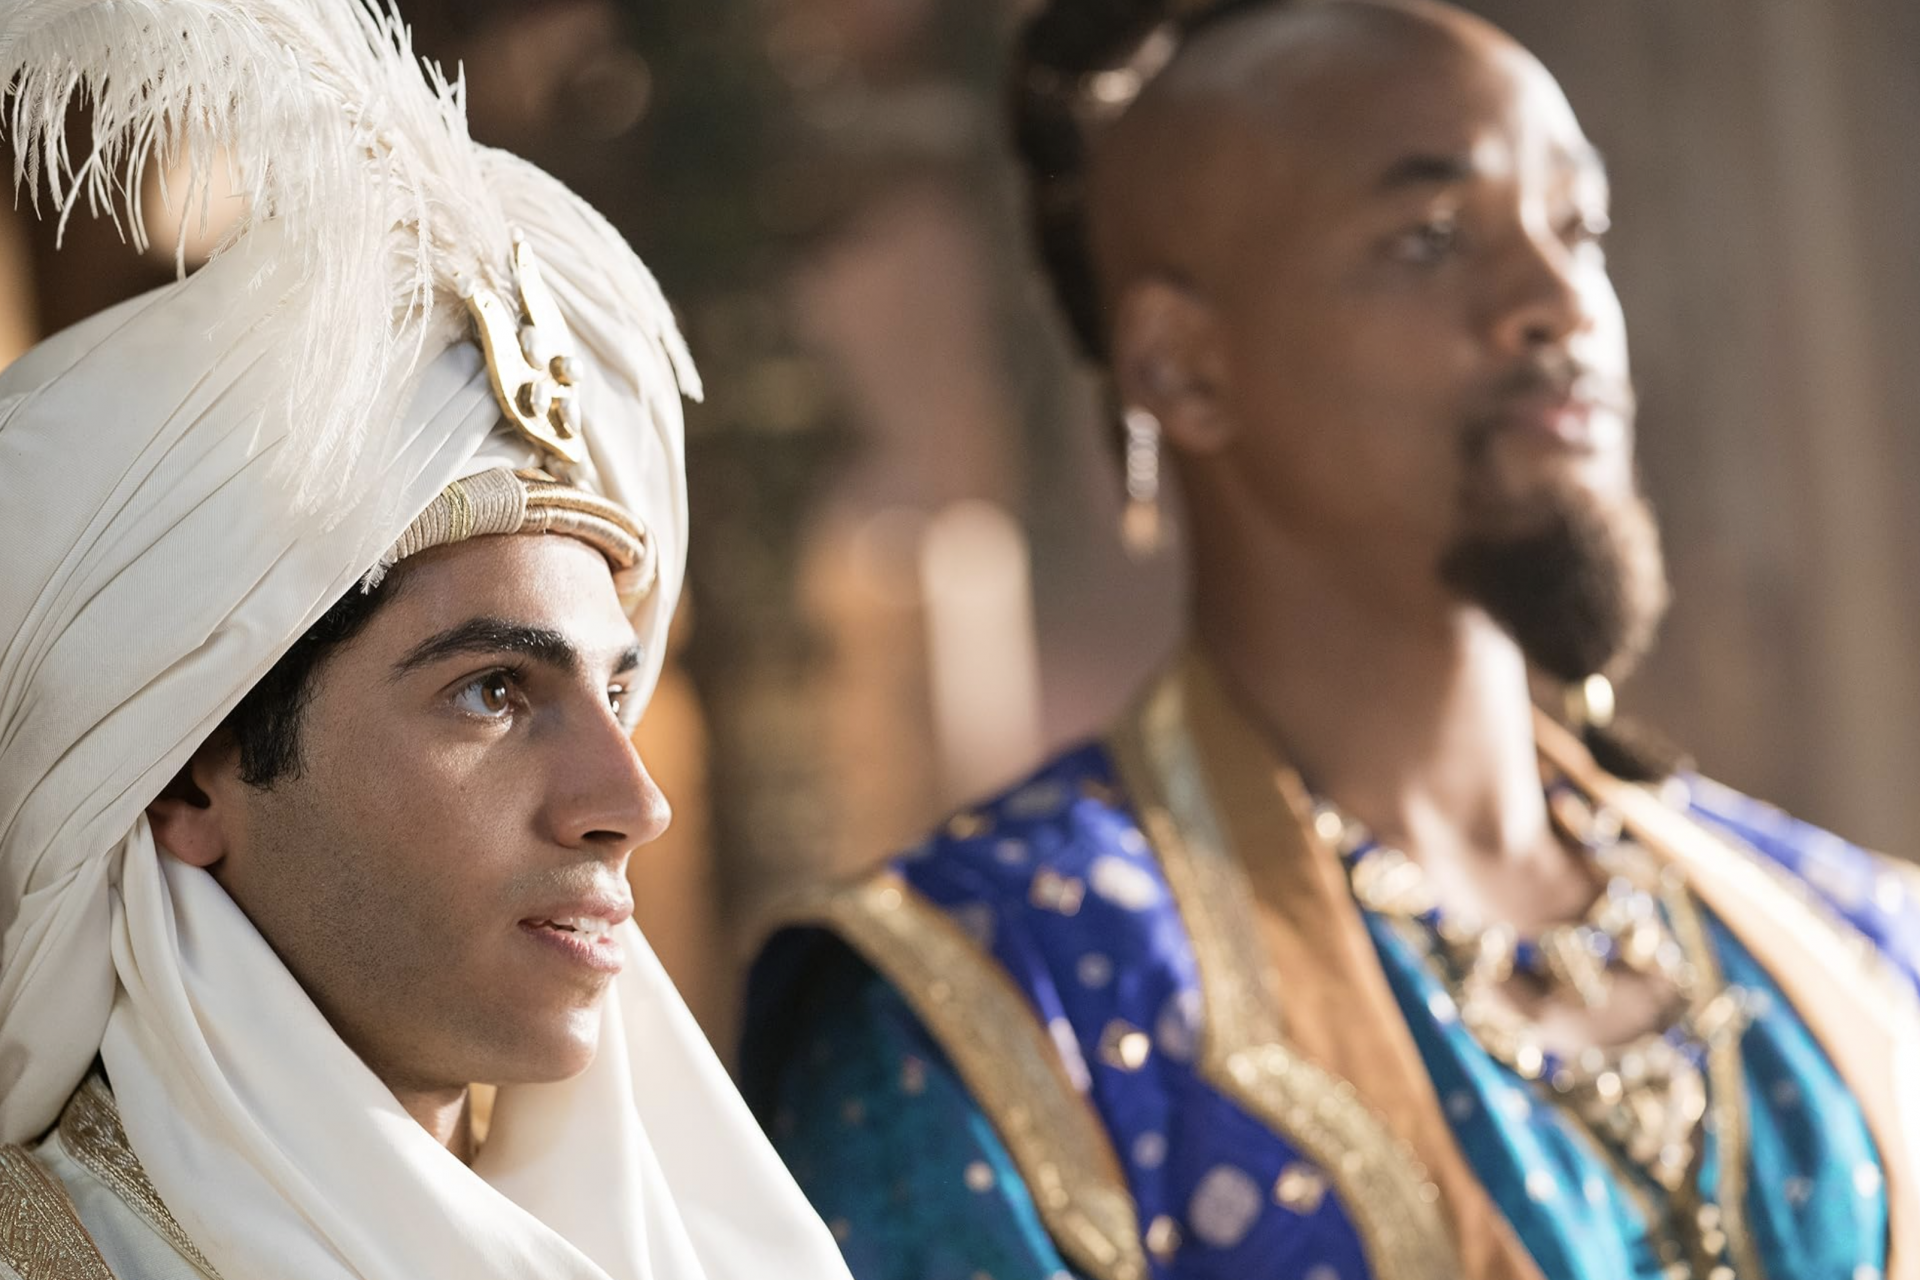 Aladdin (2019) wins